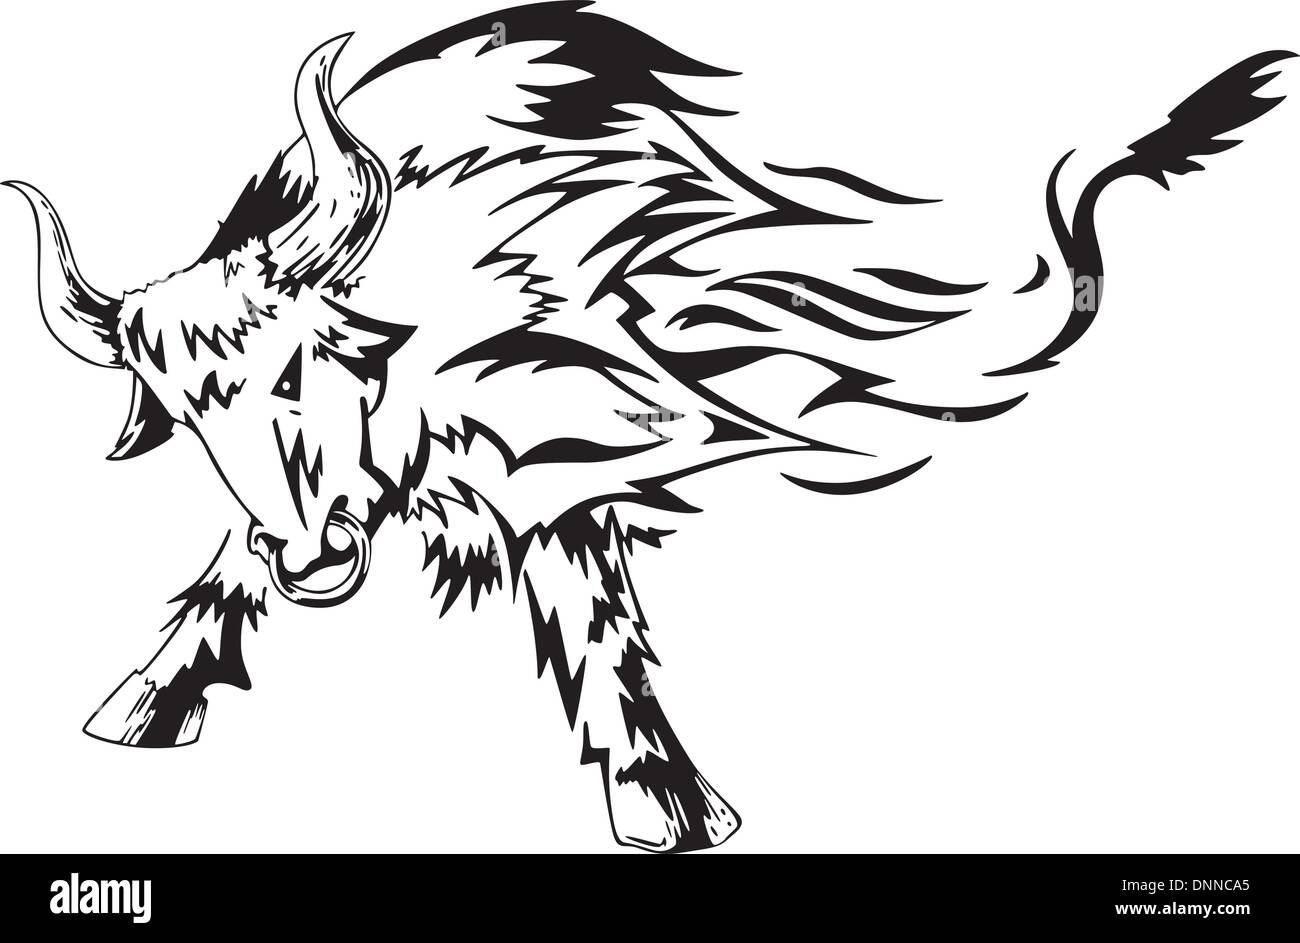 tribal bull tattoo, black and white vector illustration Stock Vector